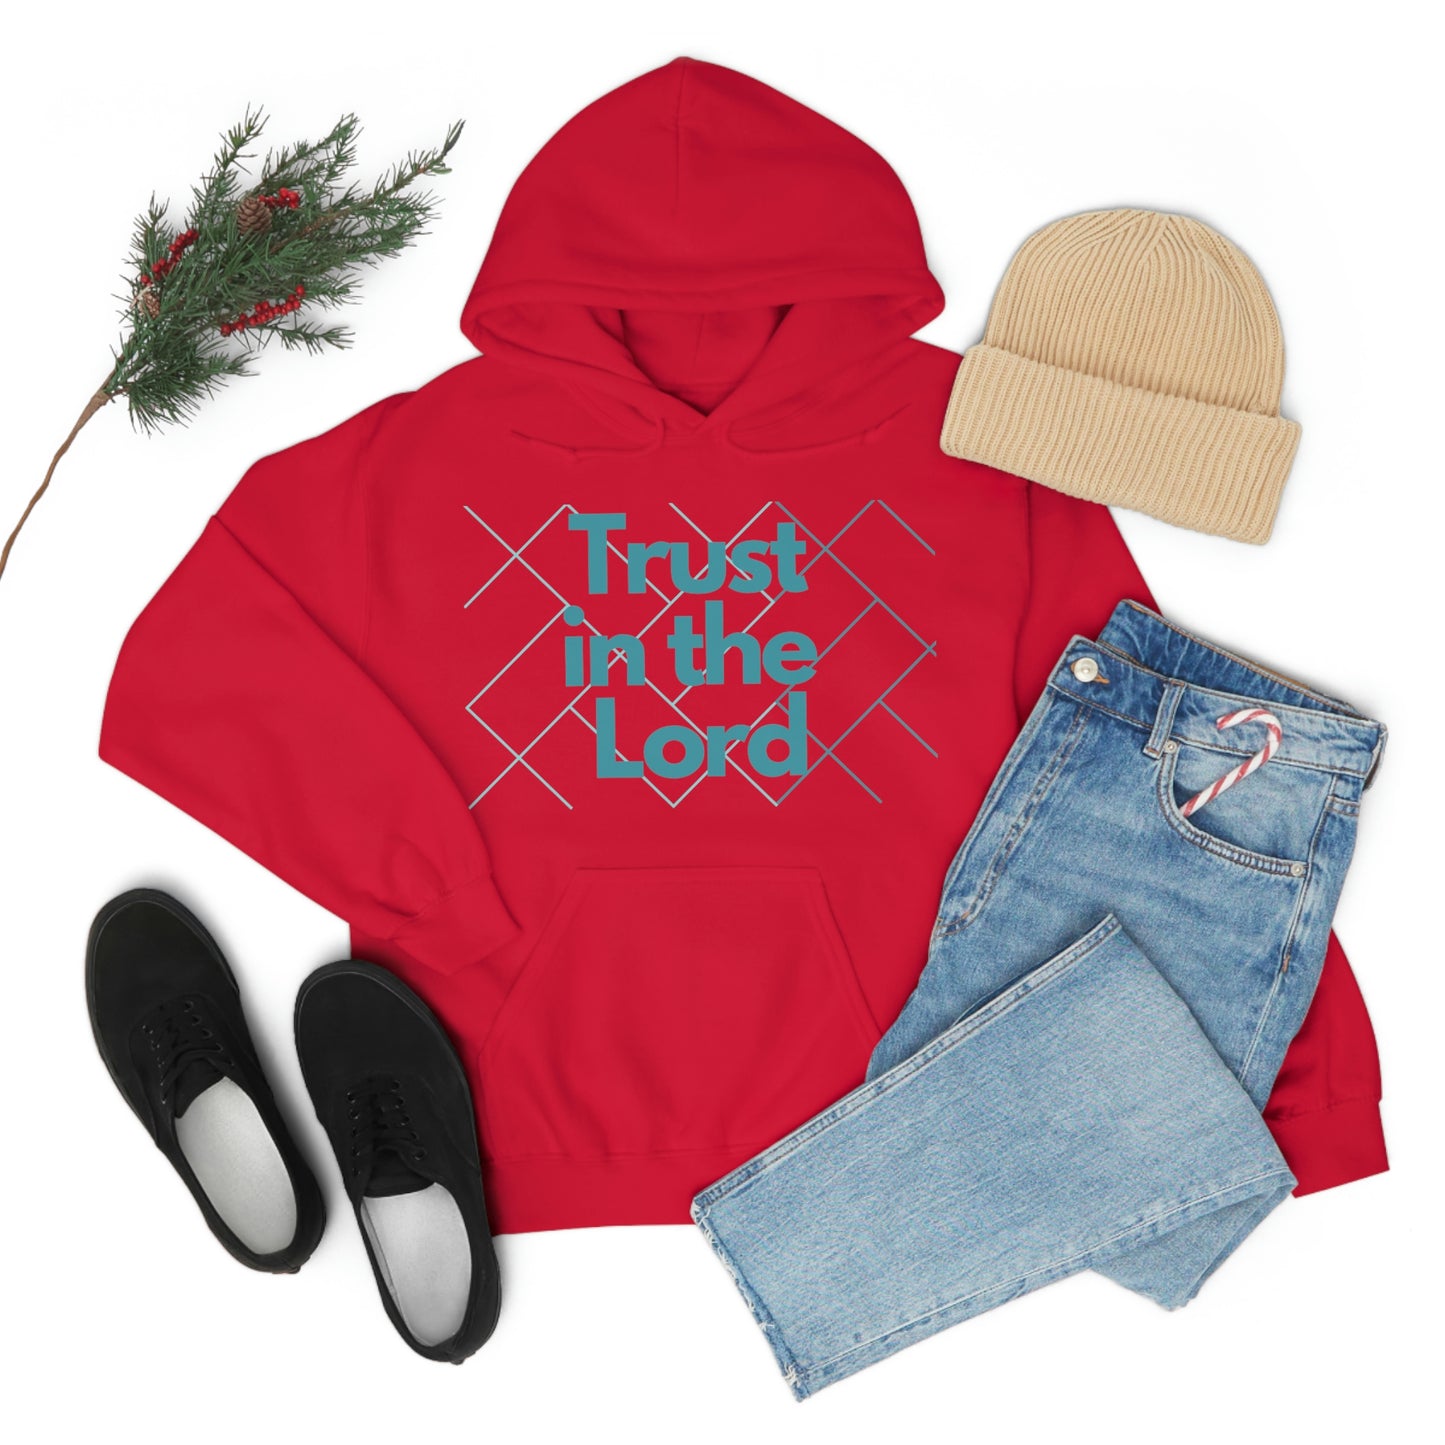 Trust - Women's Christian Hooded Sweatshirt